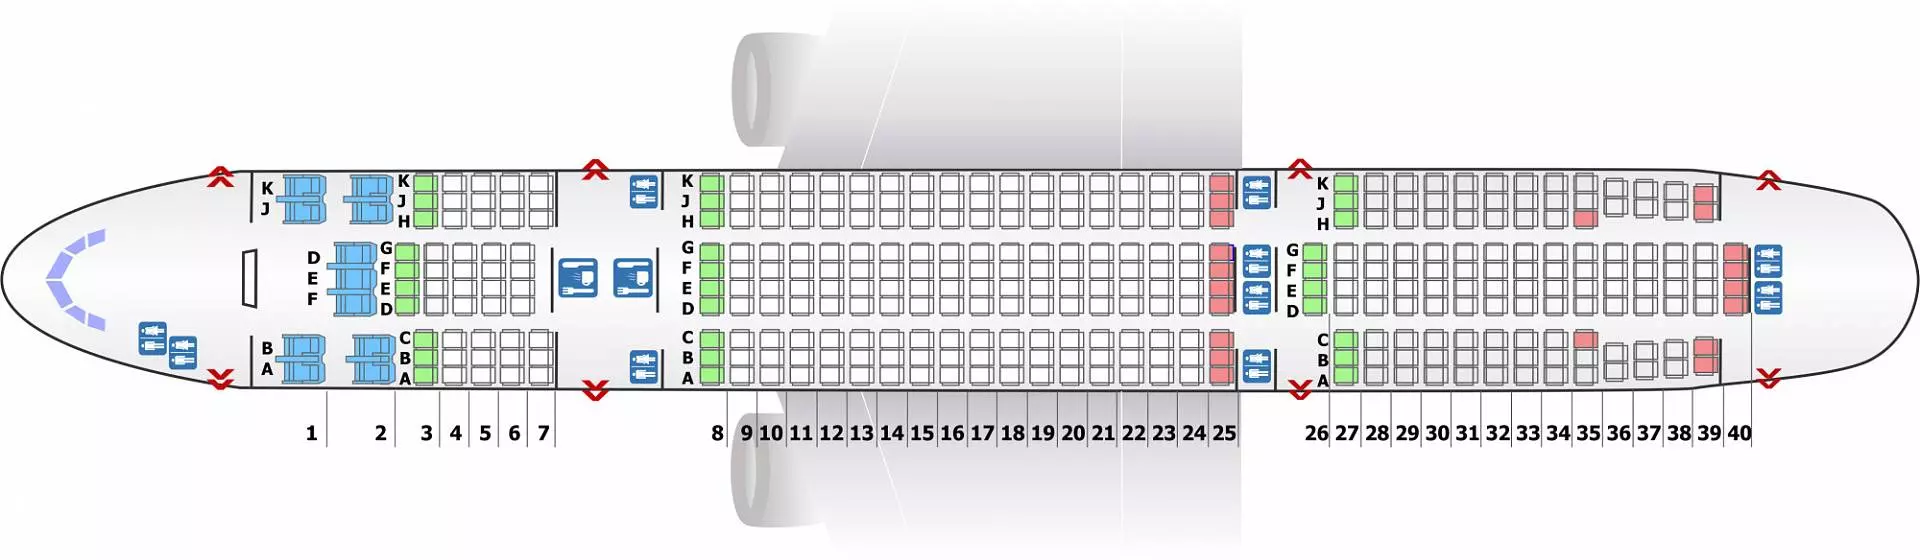 Боинг 777-200: схема салона, расположение лучших мест, характеристики, история создания